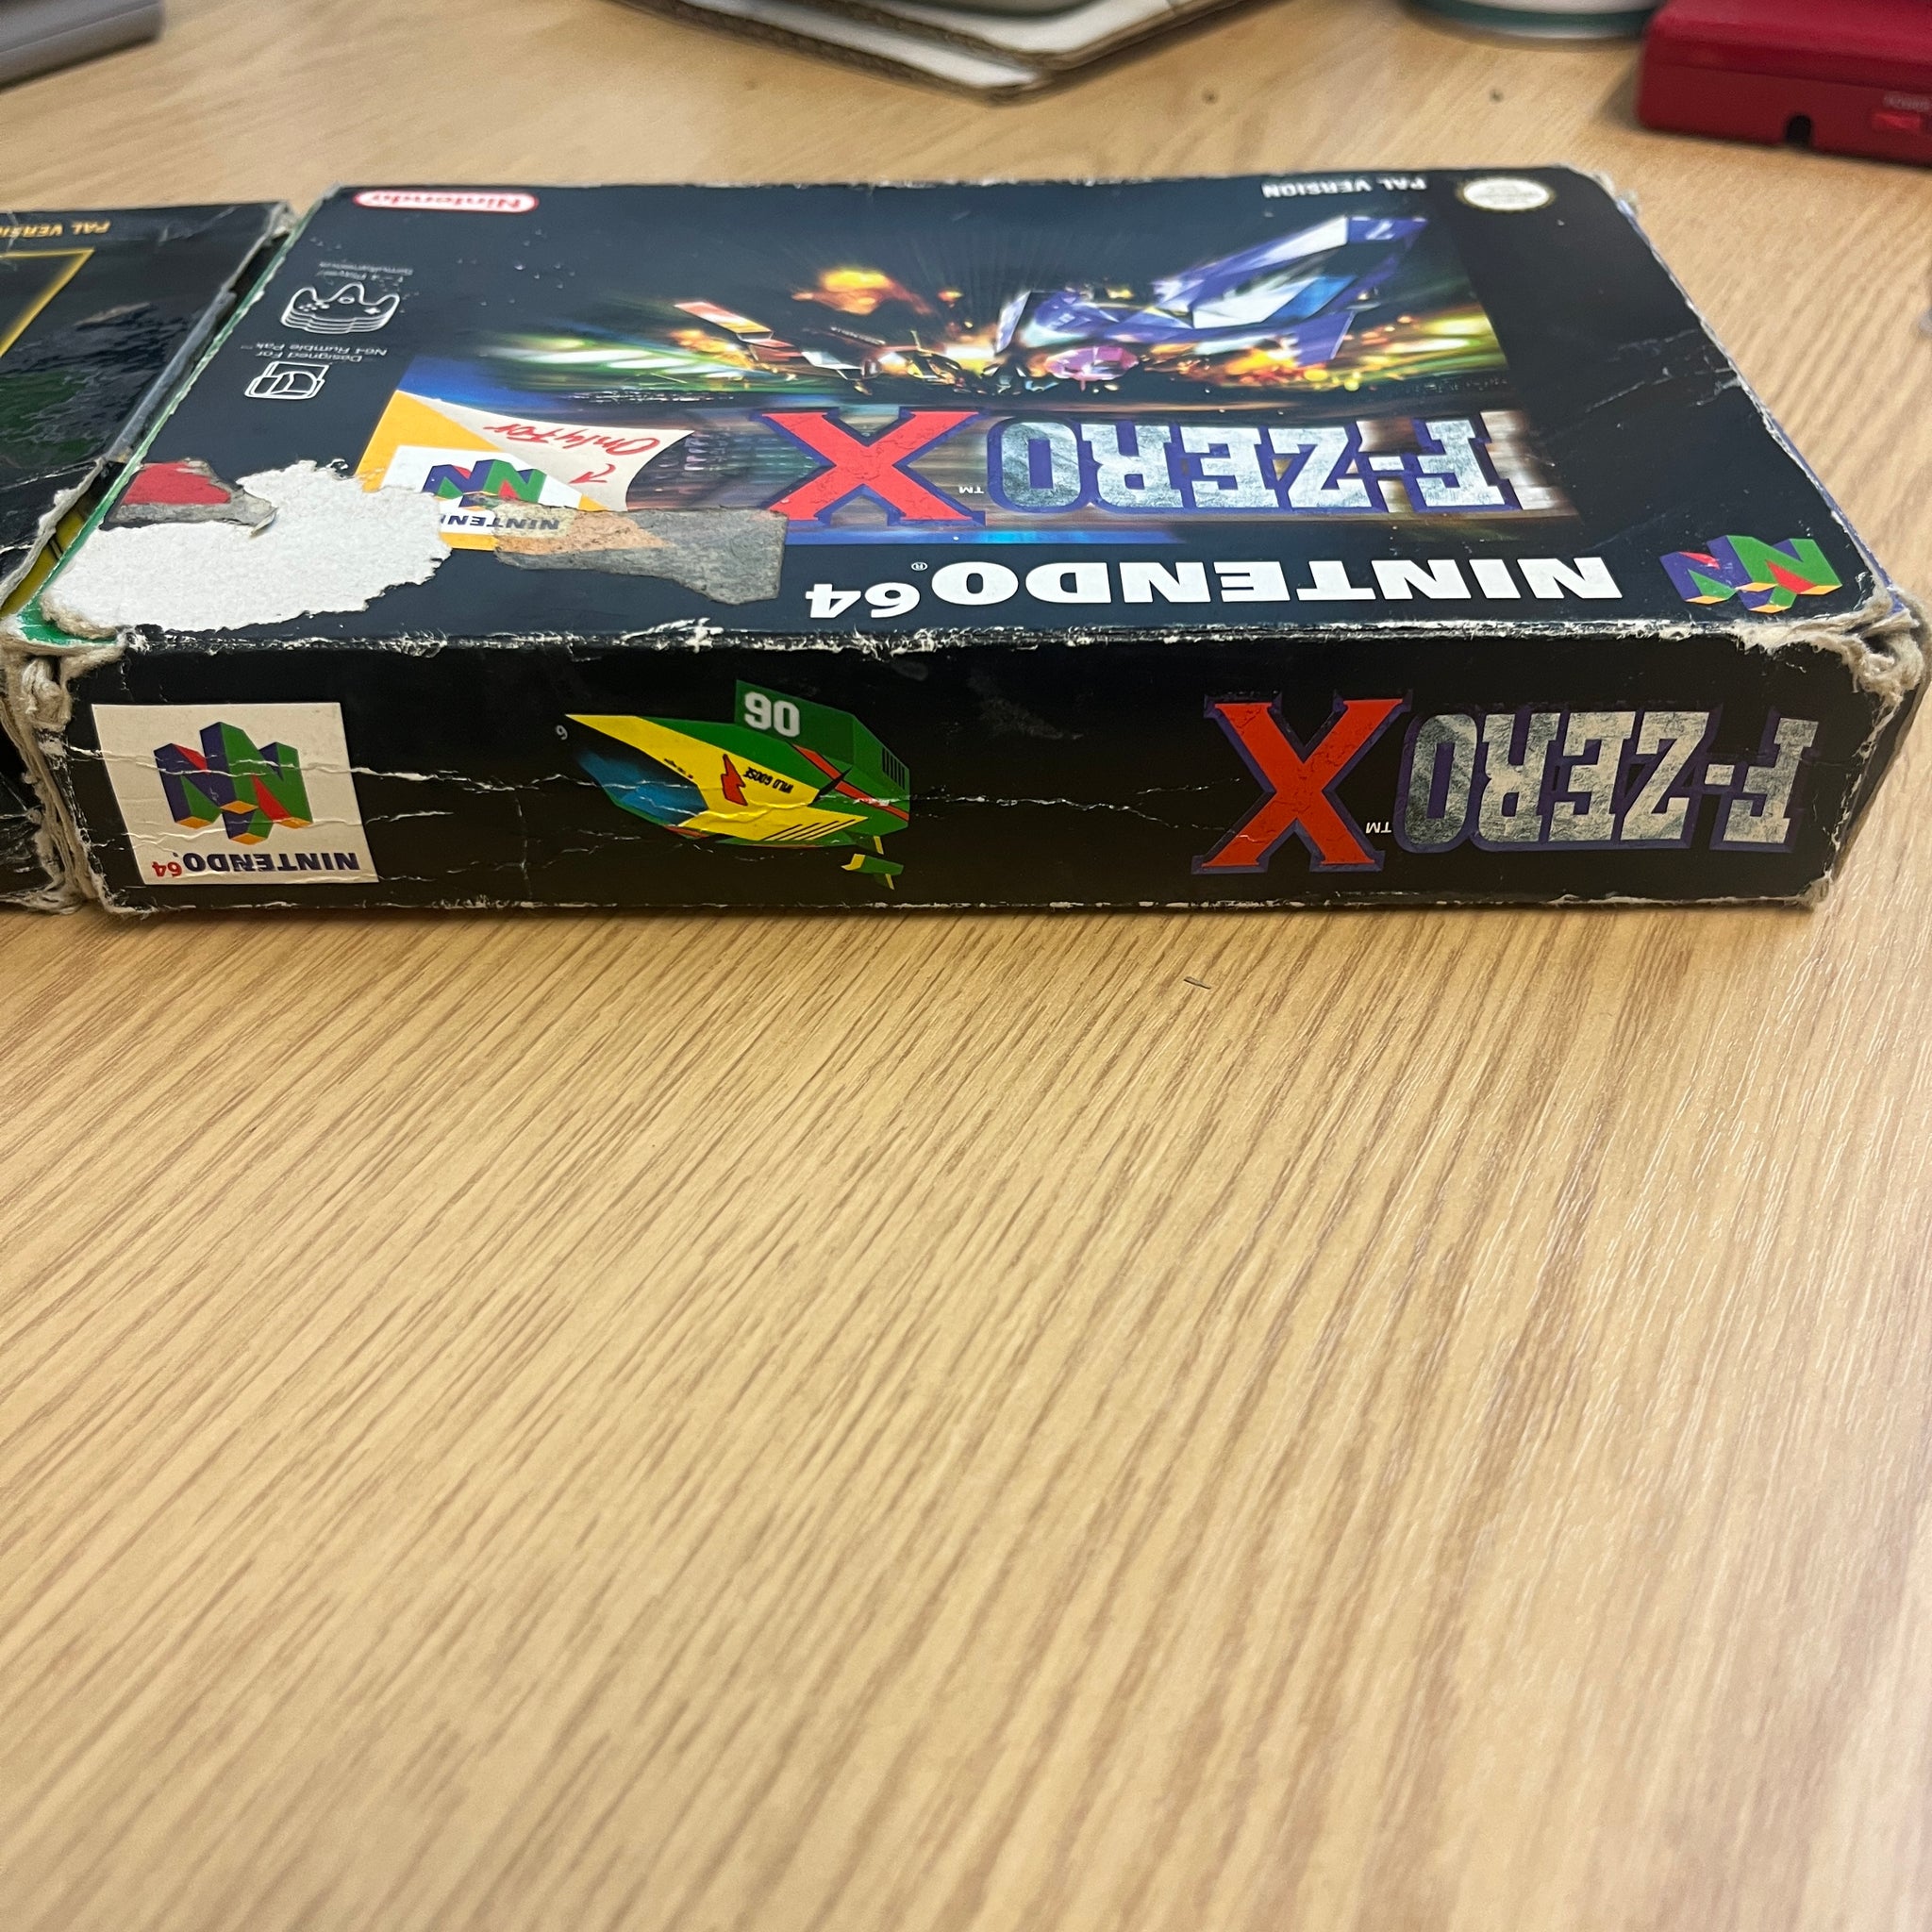 Zelda ocarina of time + f zero x boxed n64 games